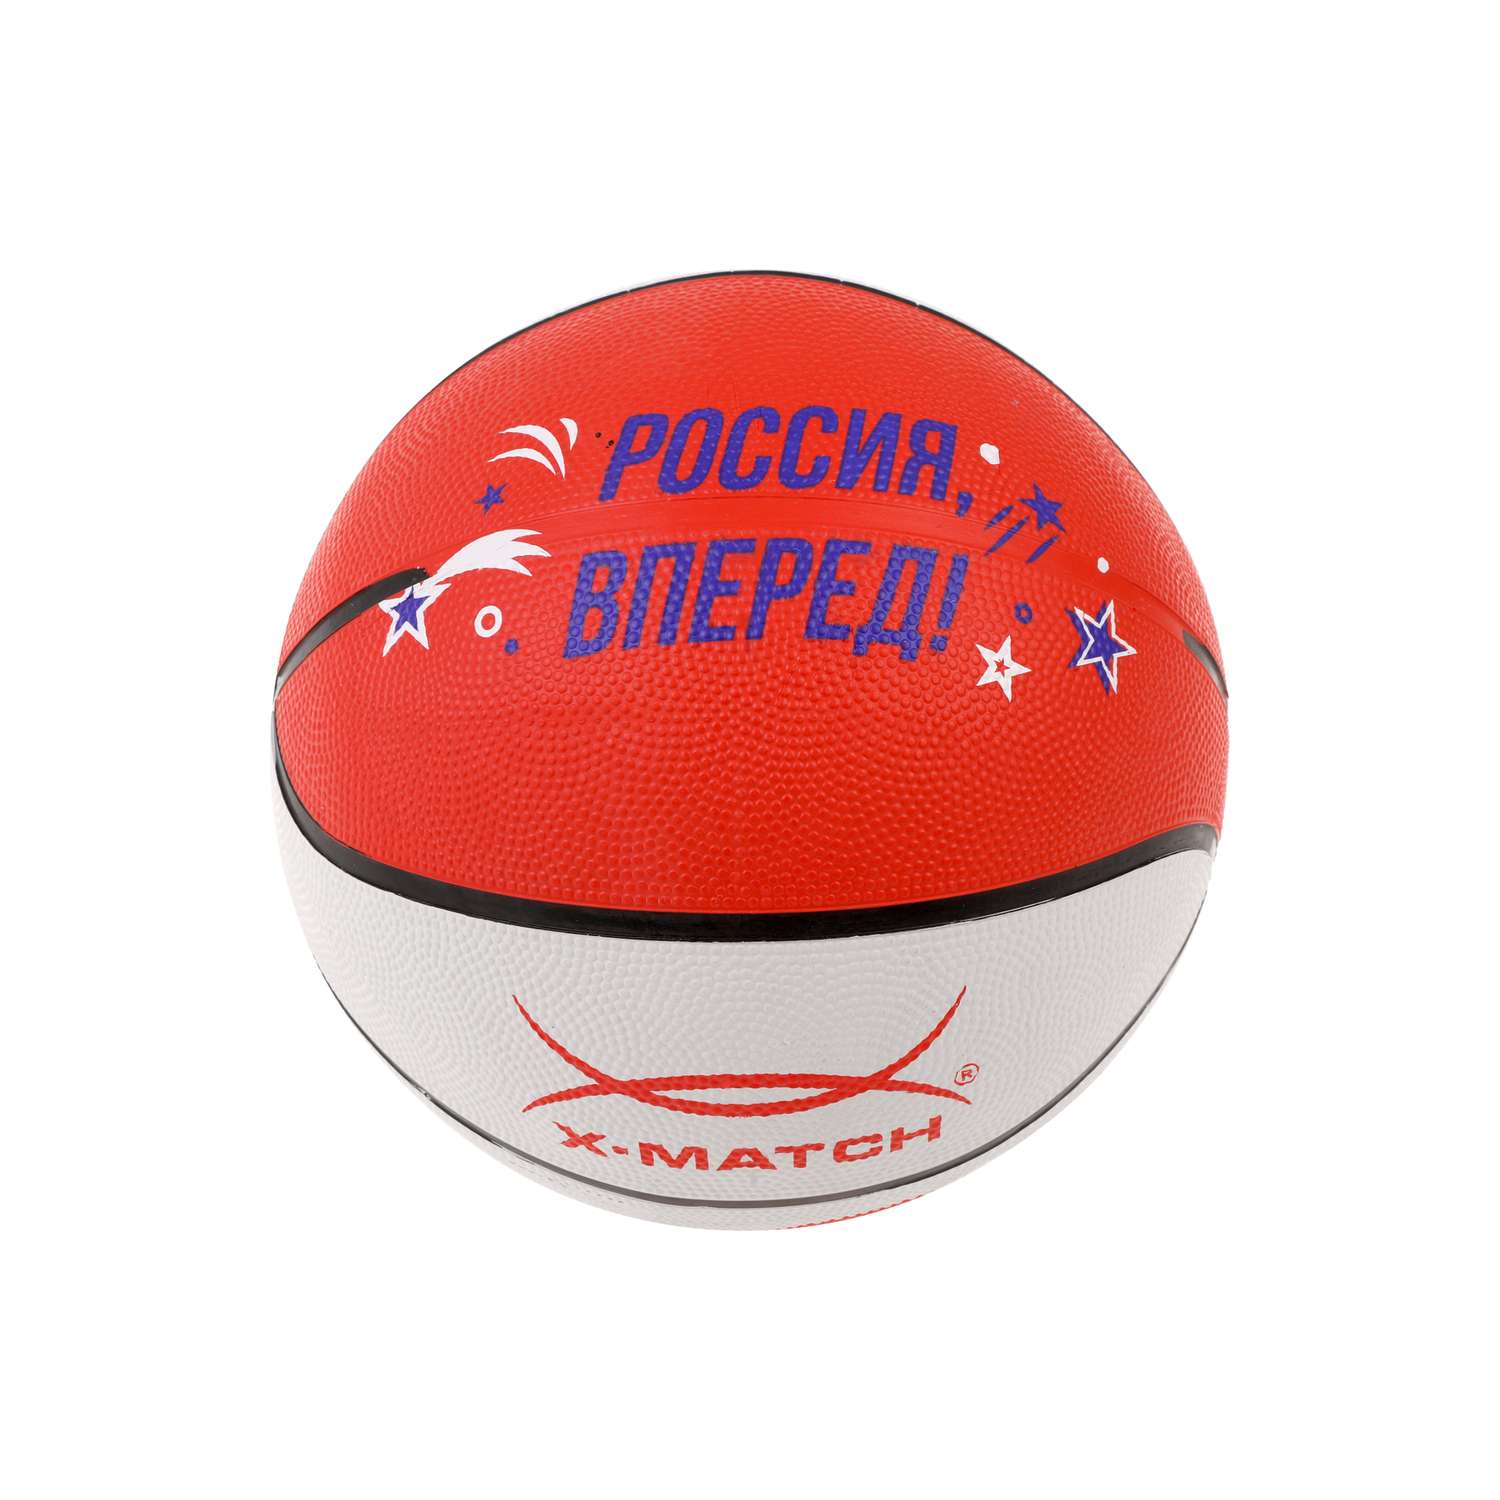 Мяч баскетбольный X-Match размер 5 резина - фото 2